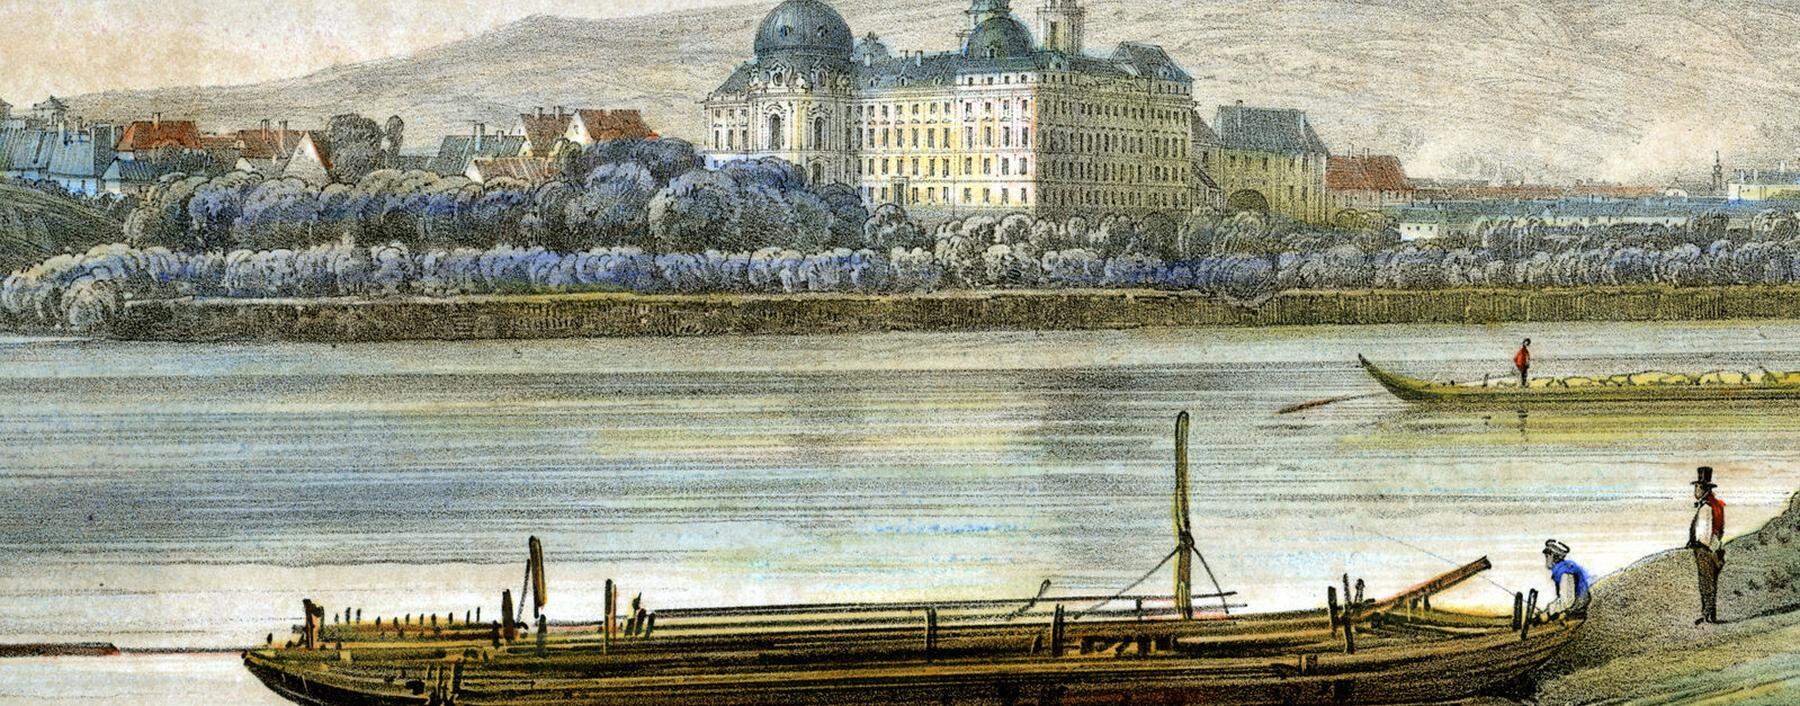 Landschaftsbilder als historische Quellen: 1847 malte Jakob Alt 55 Ölskizzen entlang der Donau. Hier der Blick auf Klosterneuburg.